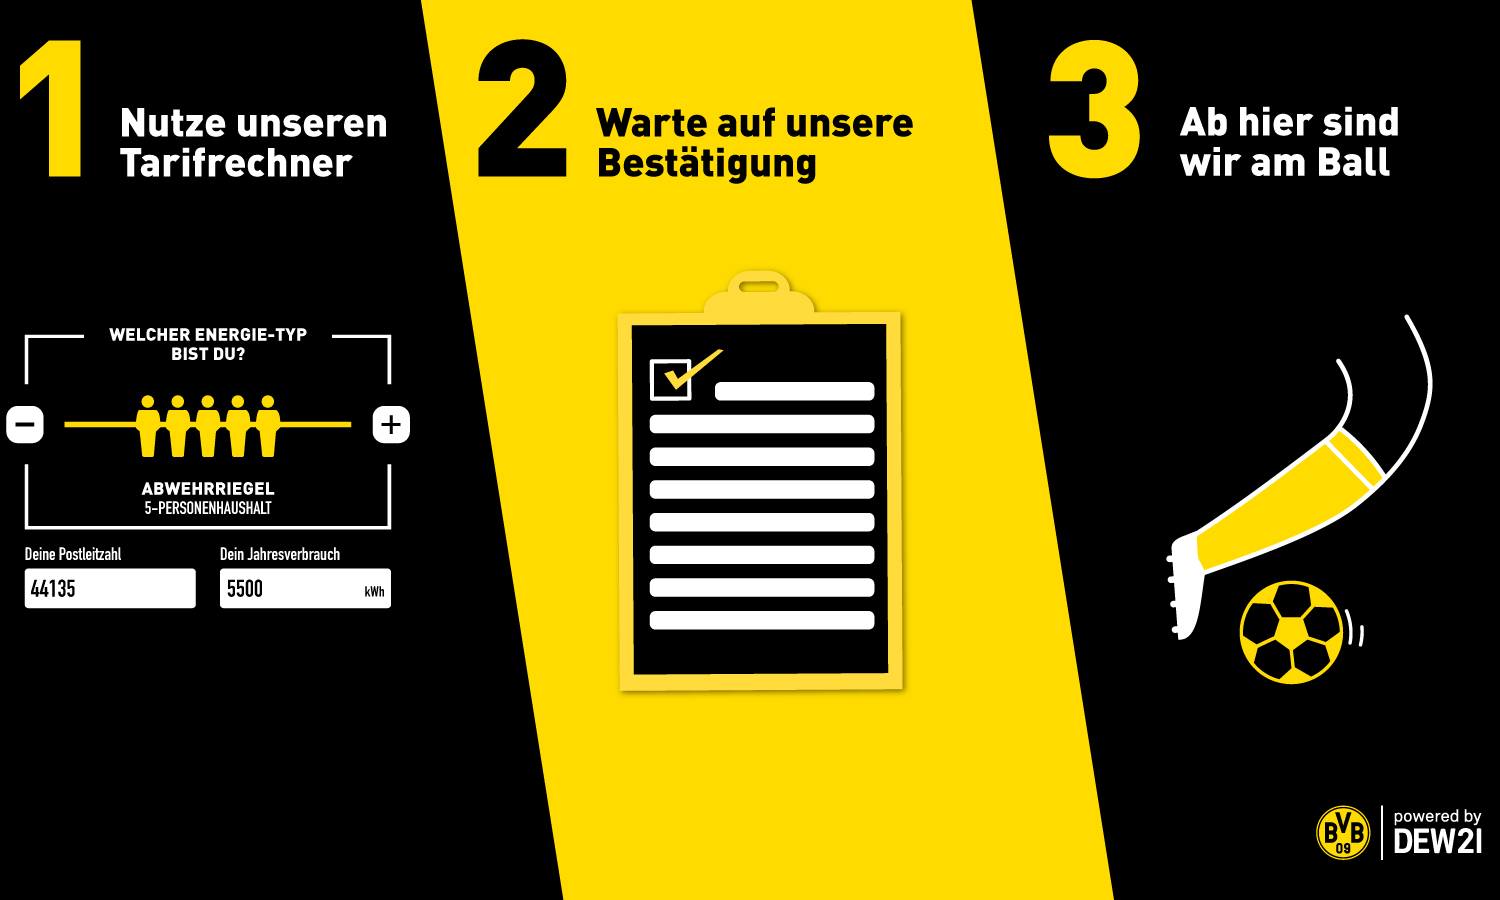 DEW21 Premium Partner BVB Borussia Dortmund Vollstrom Vollgas Strom Gas Gutschein Trikot Online Vorteil Wechselprämie